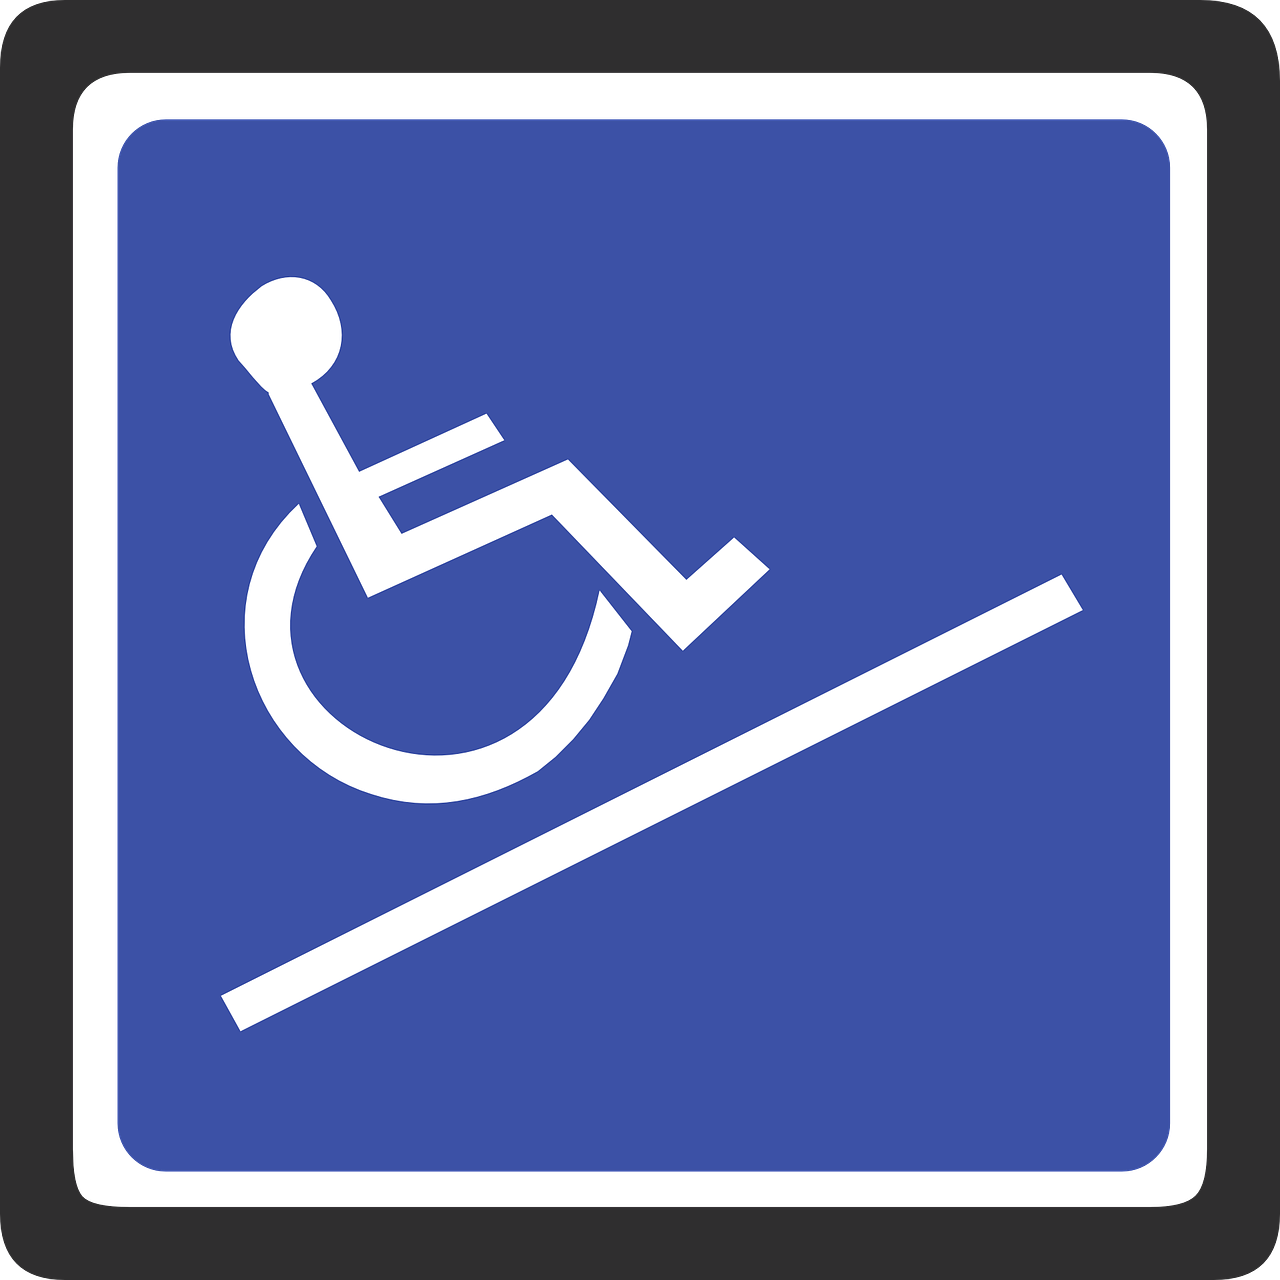 Wooncluster Westfriesland 1 instelling gehandicaptenzorg verstandelijk gehandicapten beoordeling